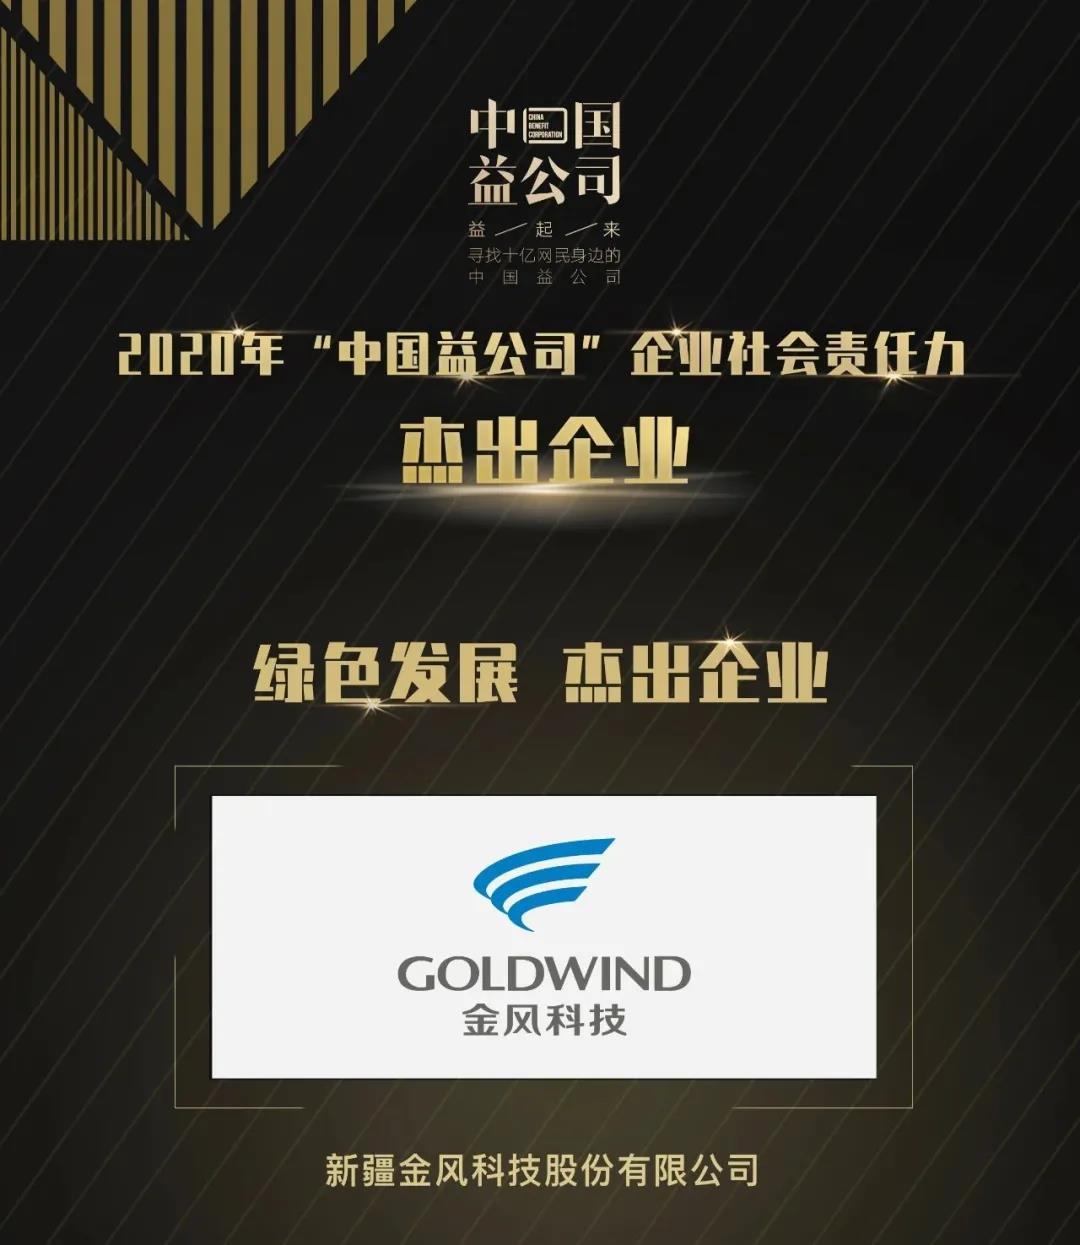 金风科技蝉联“中国益公司”绿色发展杰出企业奖